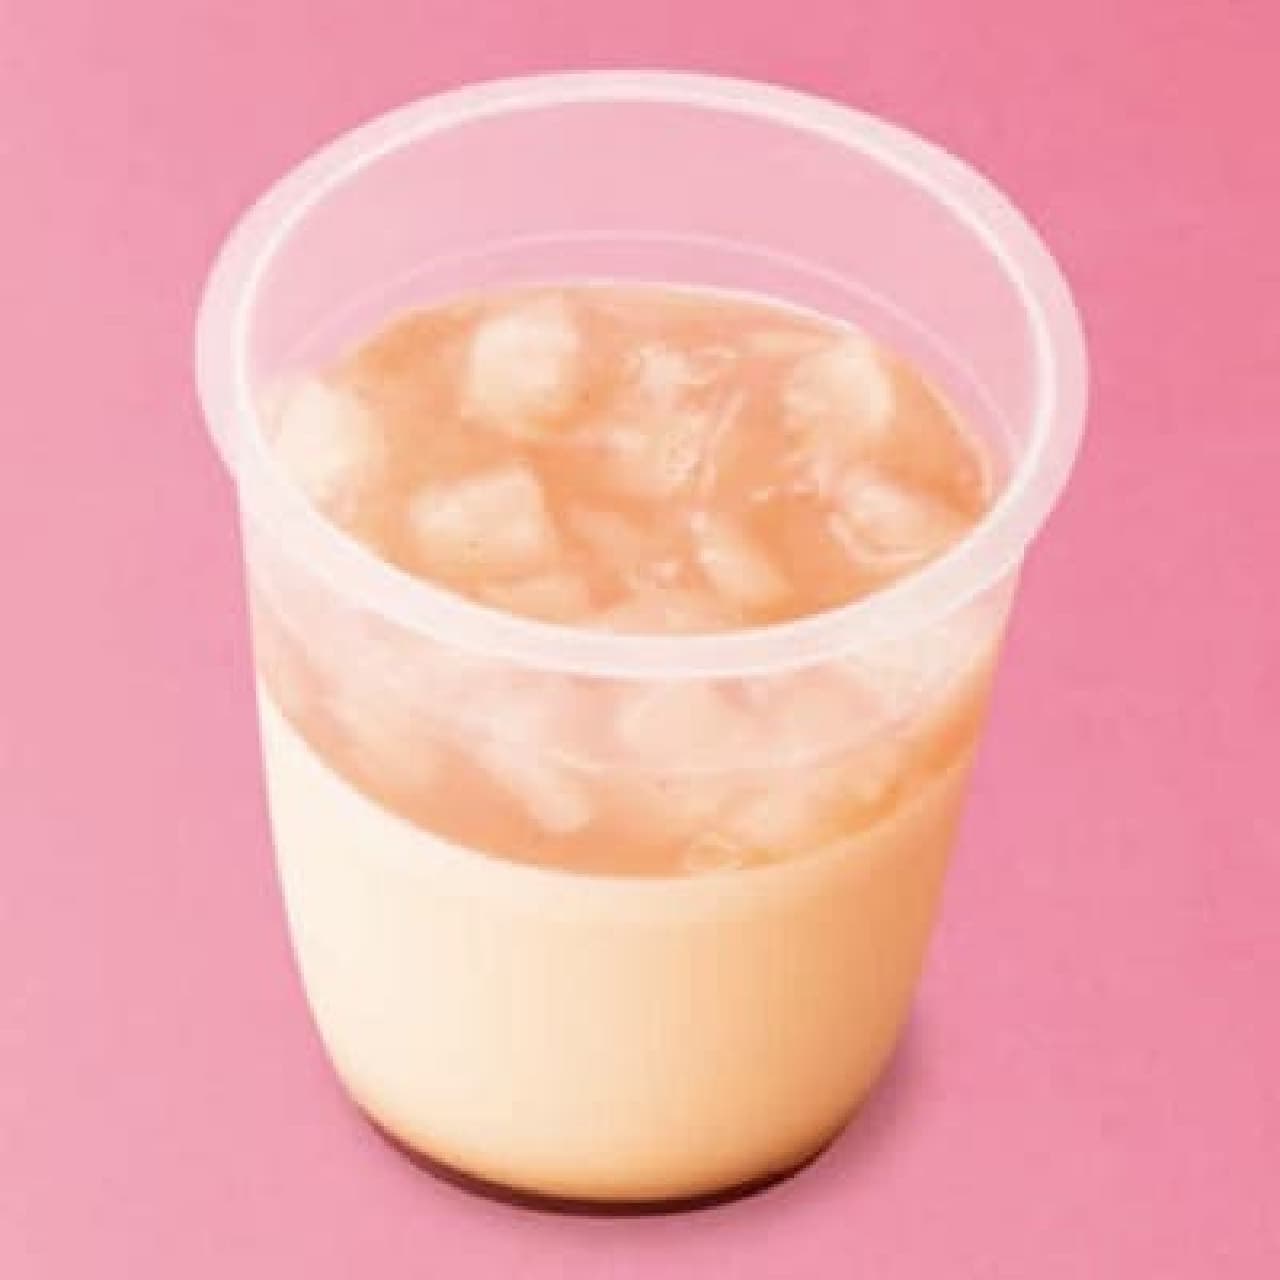 Chateraise "Yamanashi Prefecture White Peach Premium Pudding"